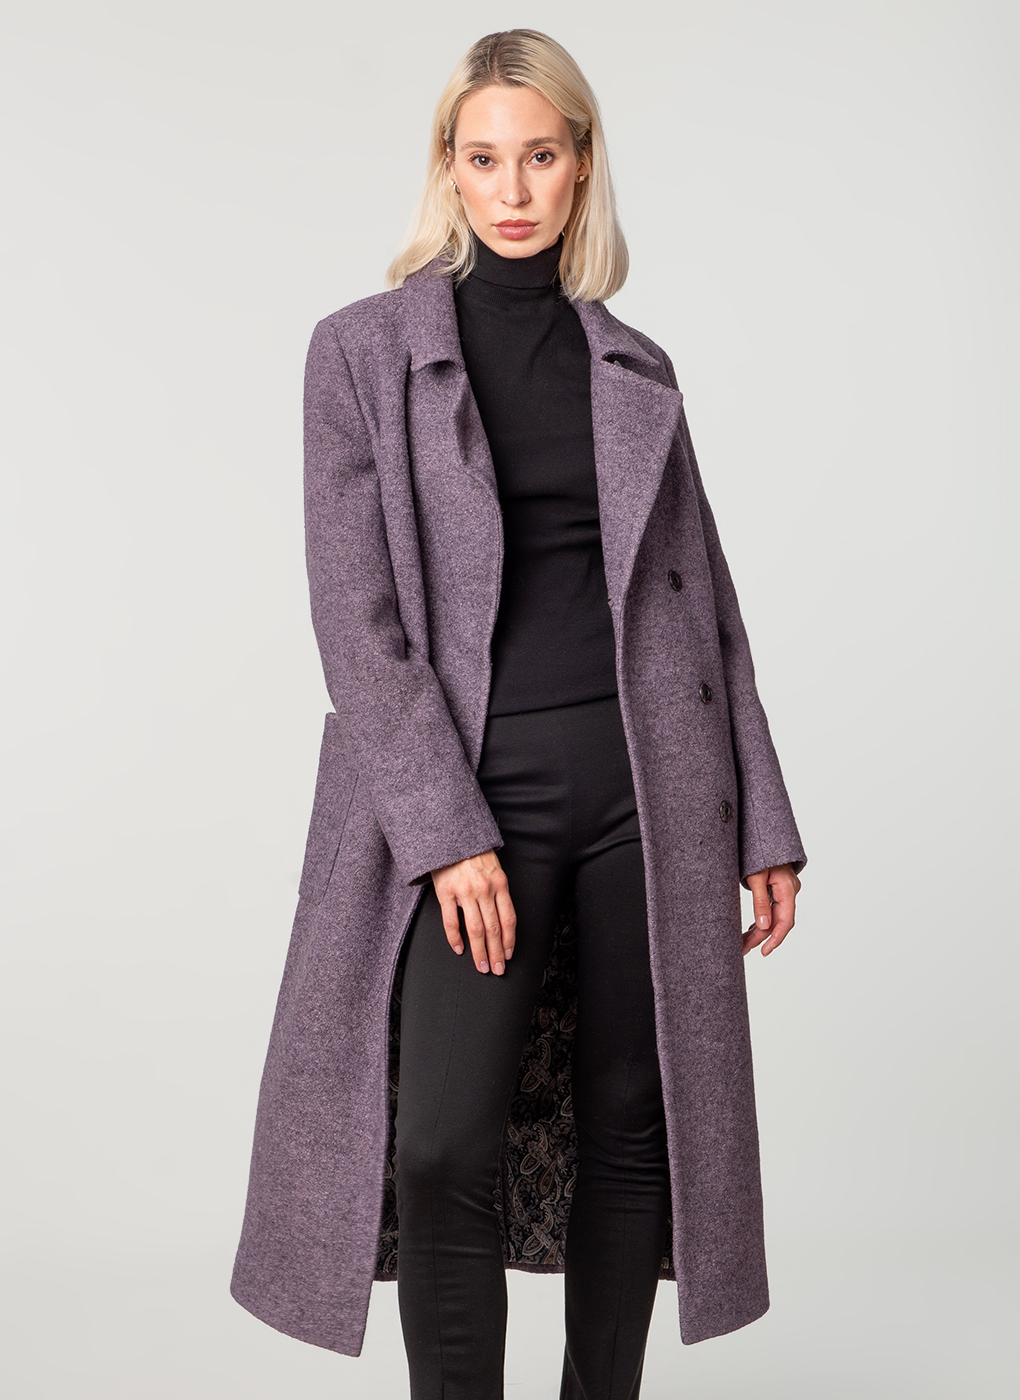 Пальто женское Каляев 37665 фиолетовое 46 RU